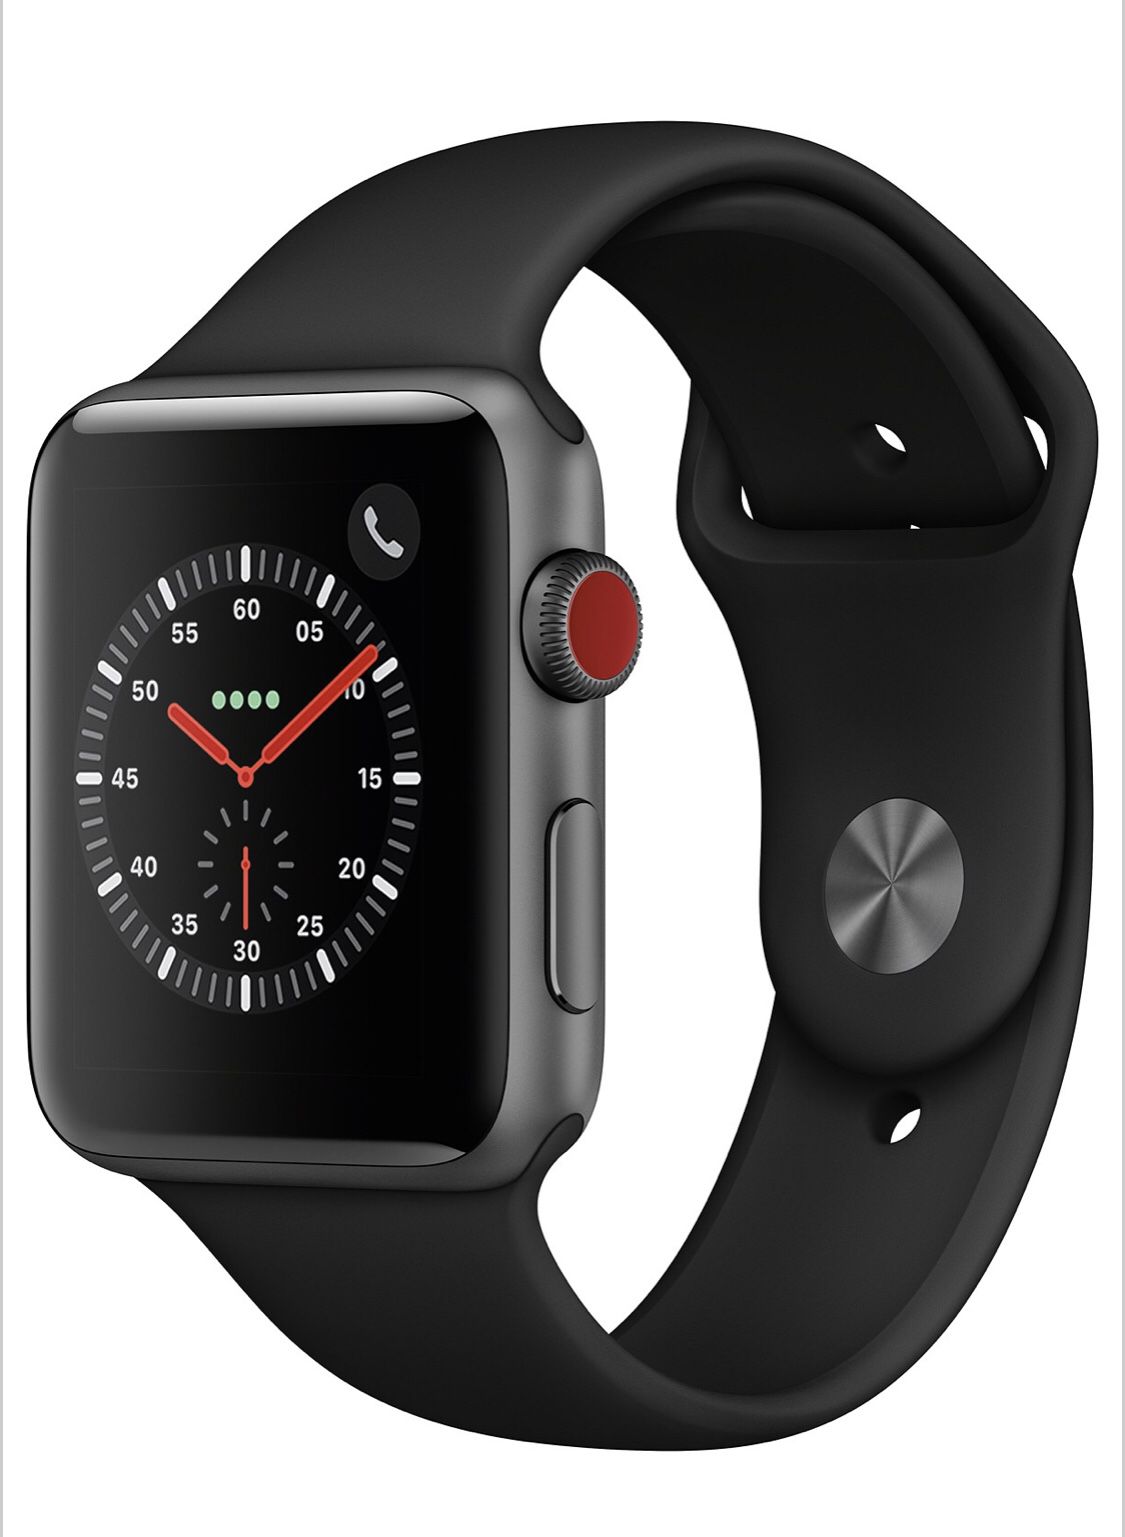 Apple Watch gen 3